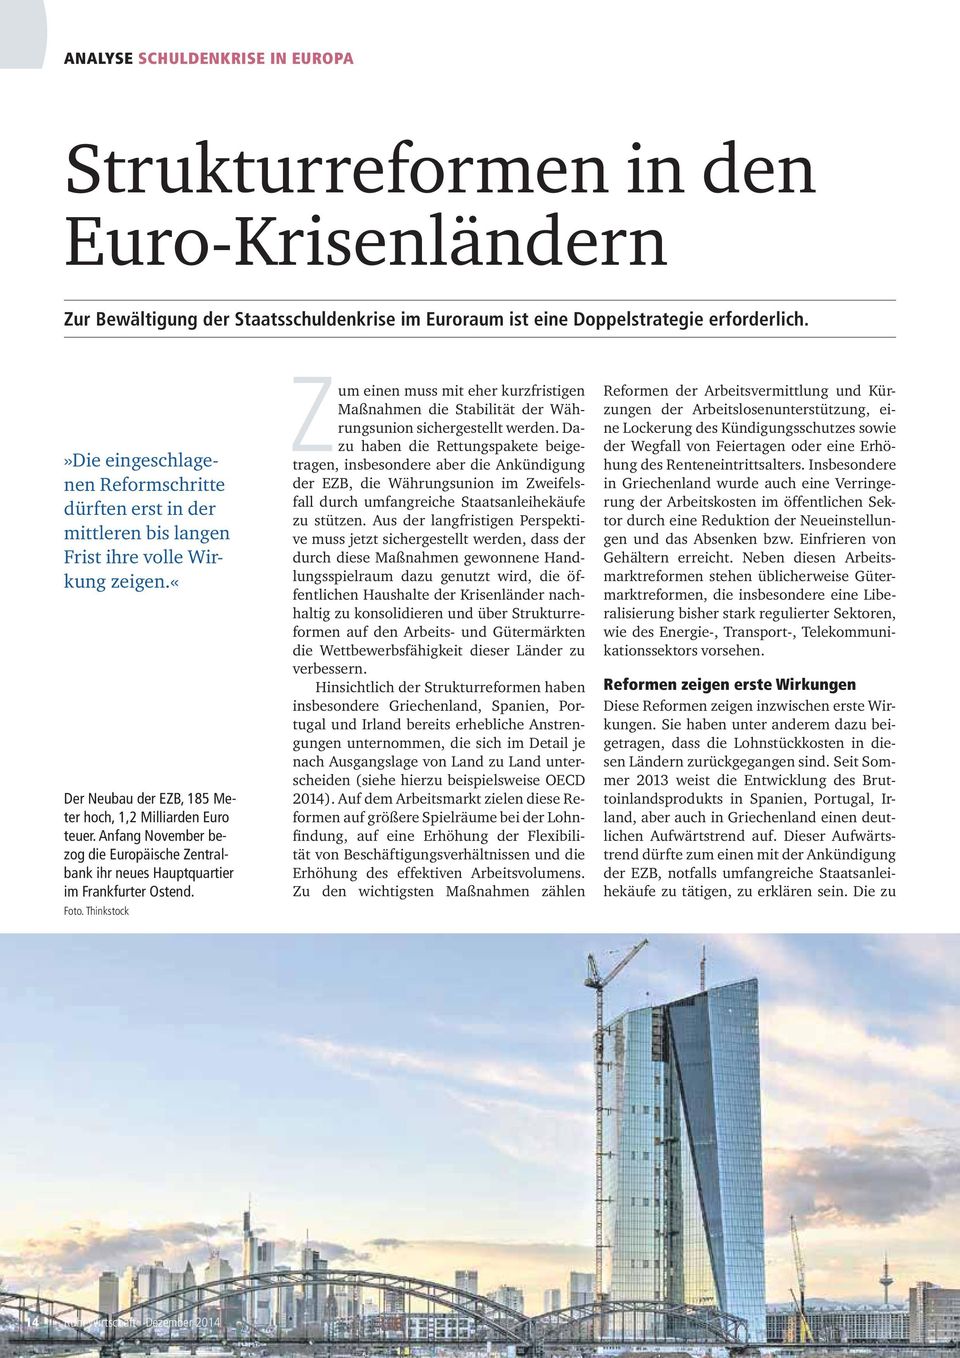 Anfang November bezog die Europäische Zentralbank ihr neues Hauptquartier im Frankfurter Ostend. Foto.